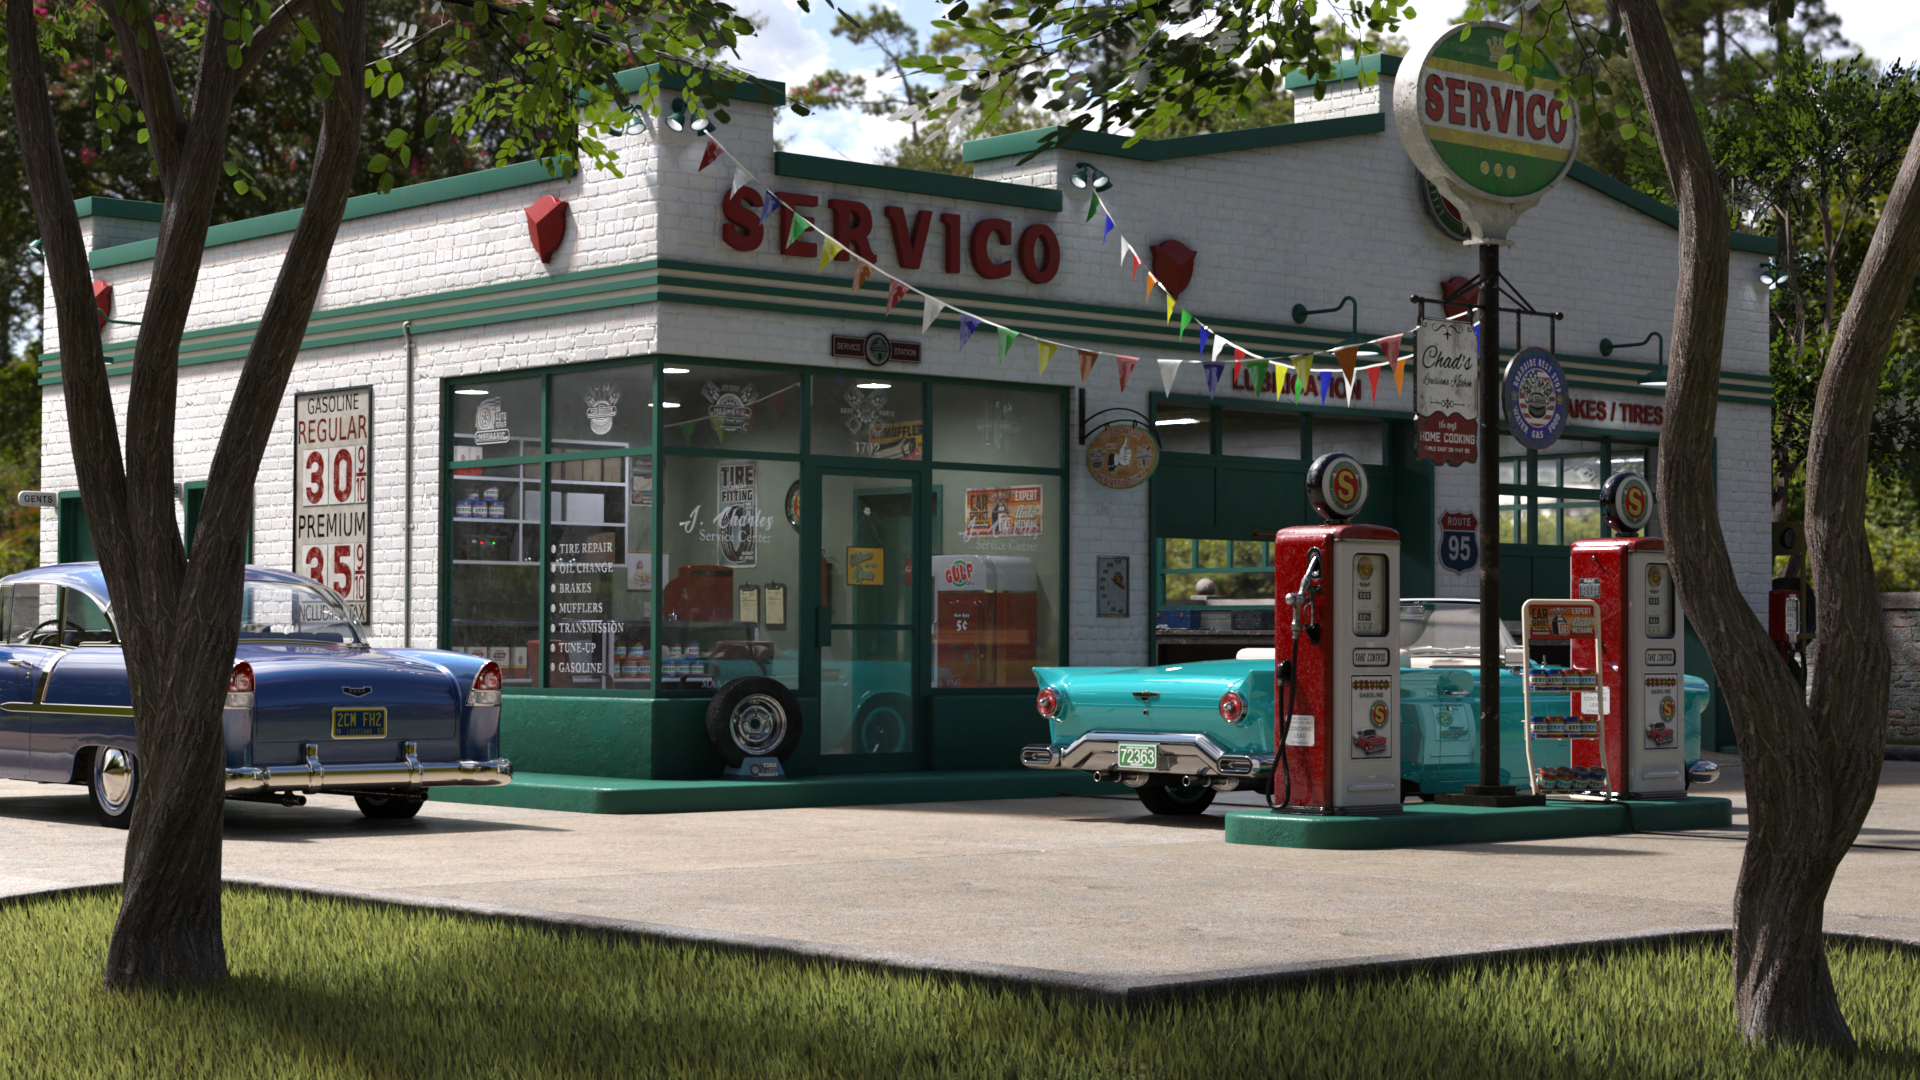 Servico Vintage Gas Station by: SloshWerks, 3D Models by Daz 3D